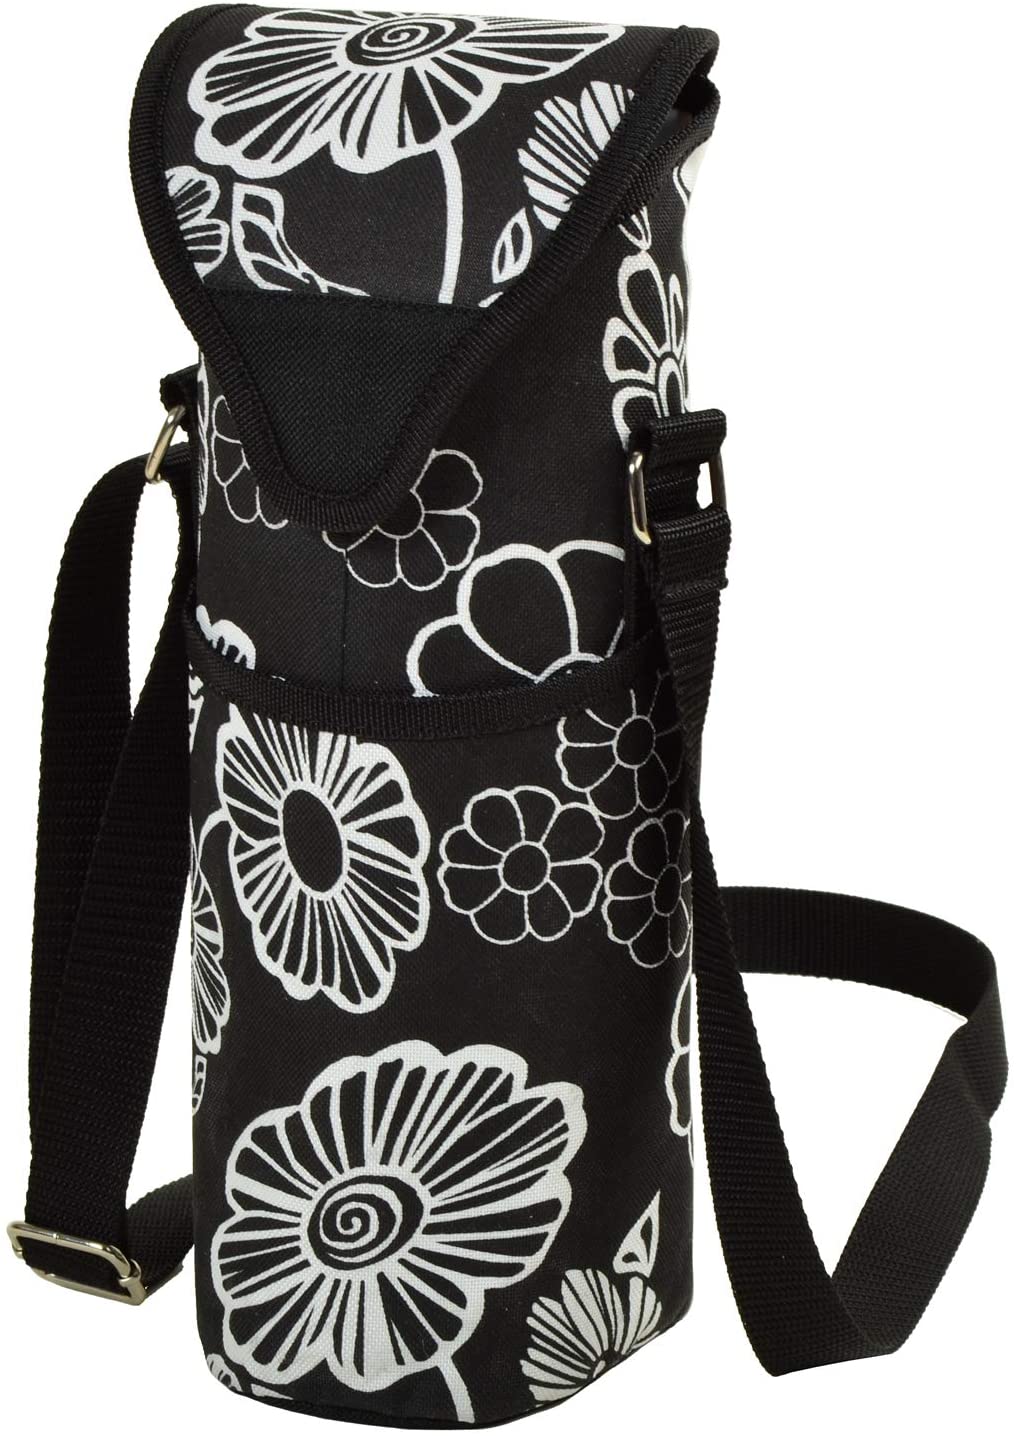 (D) Single Bottle Cooler Tote, Picnic Backpack Bag for Outdoor (Black White)